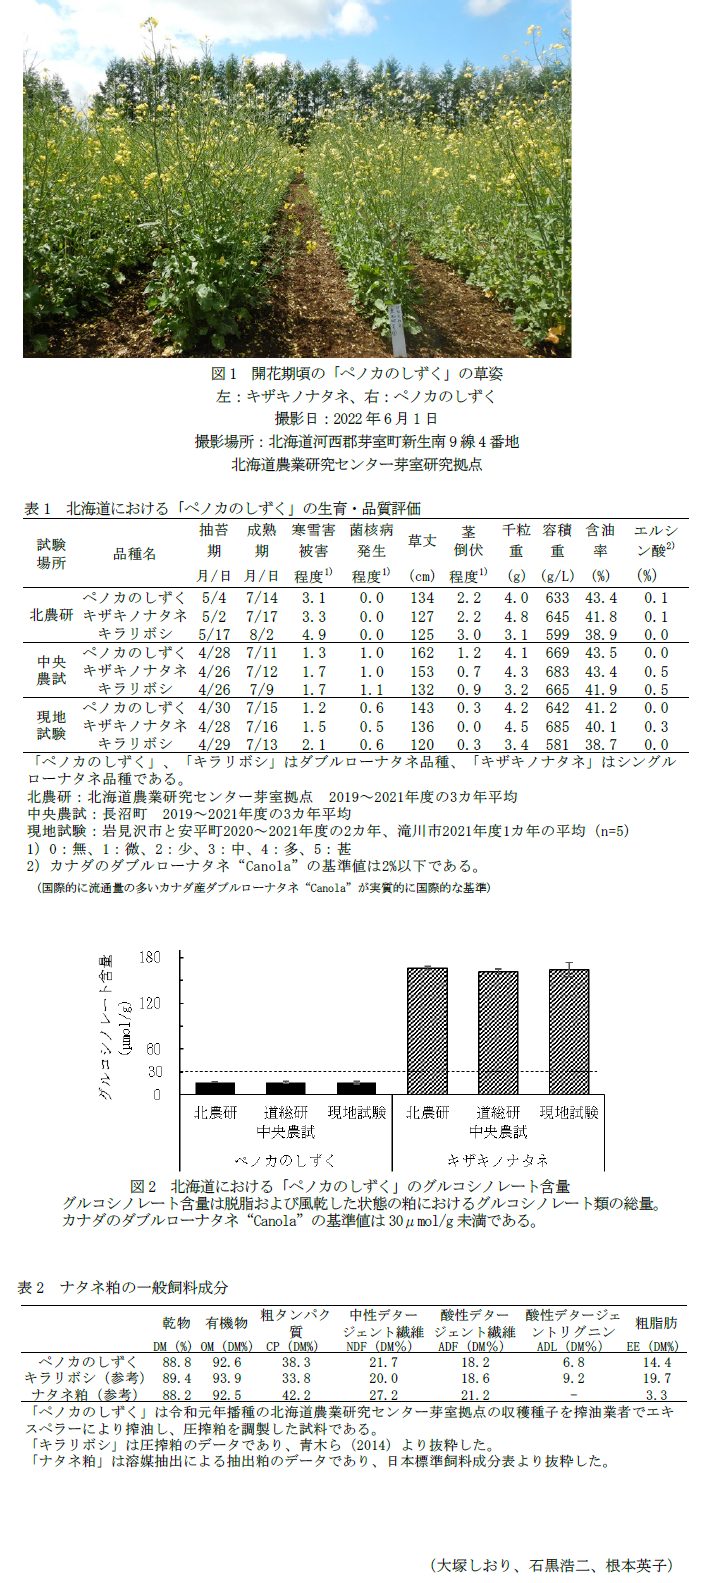 図1 開花期頃の「ペノカのしずく」の草姿,表1 北海道における「ペノカのしずく」の生育・品質評価,図2 北海道における「ペノカのしずく」のグルコシノレート含量,表2 ナタネ粕の一般飼料成分